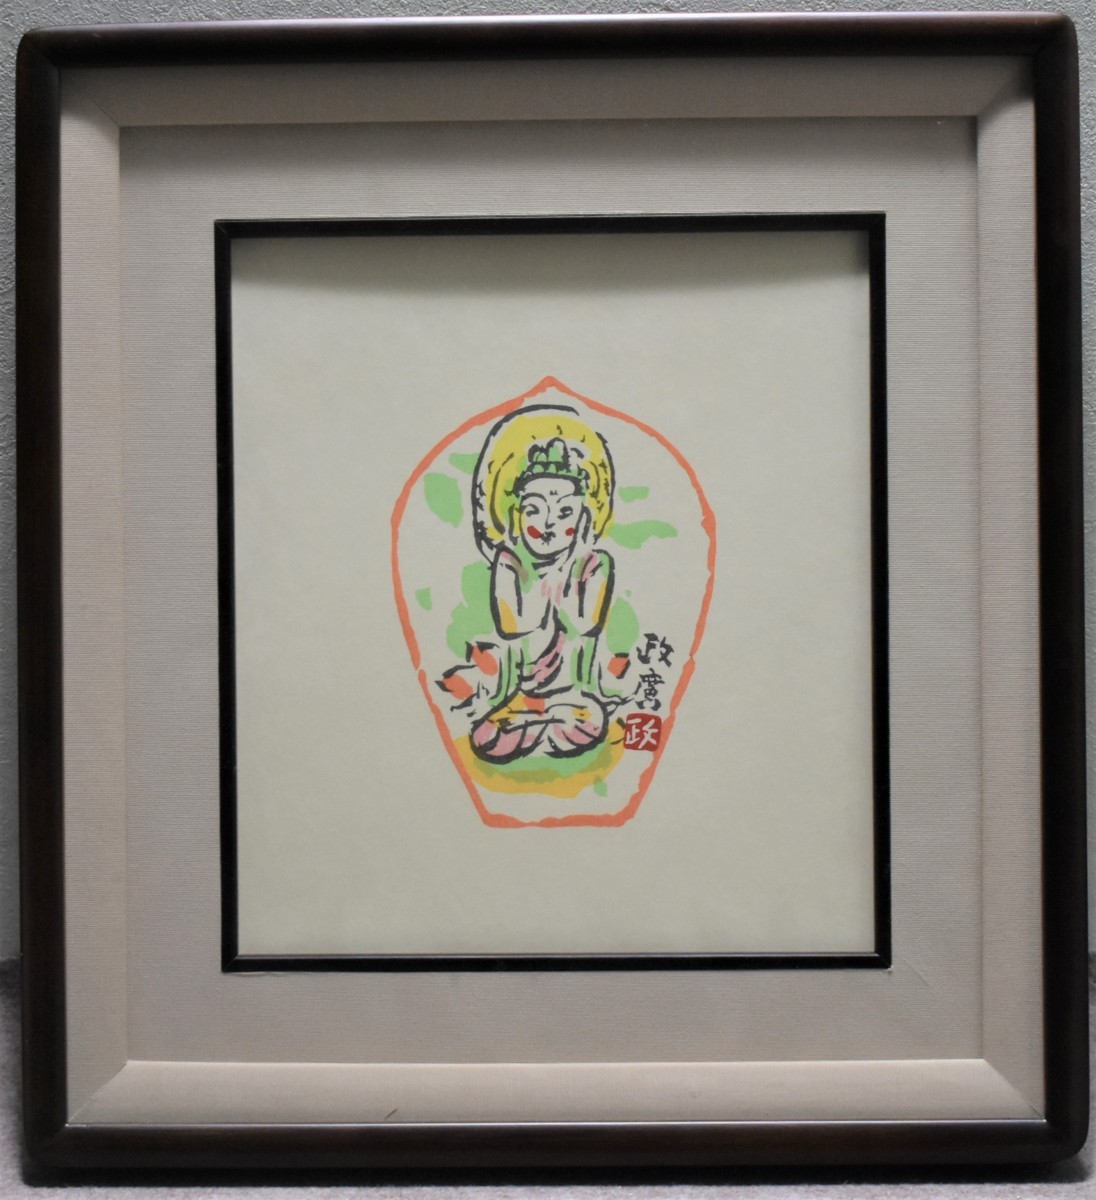 Une œuvre rare et dénichée ! Galerie Seiko du bodhisattva debout Fleurs éparses (Shikishi) de Masahiro Sawada, Ouvrages d'art, Impressions, impression sur bois